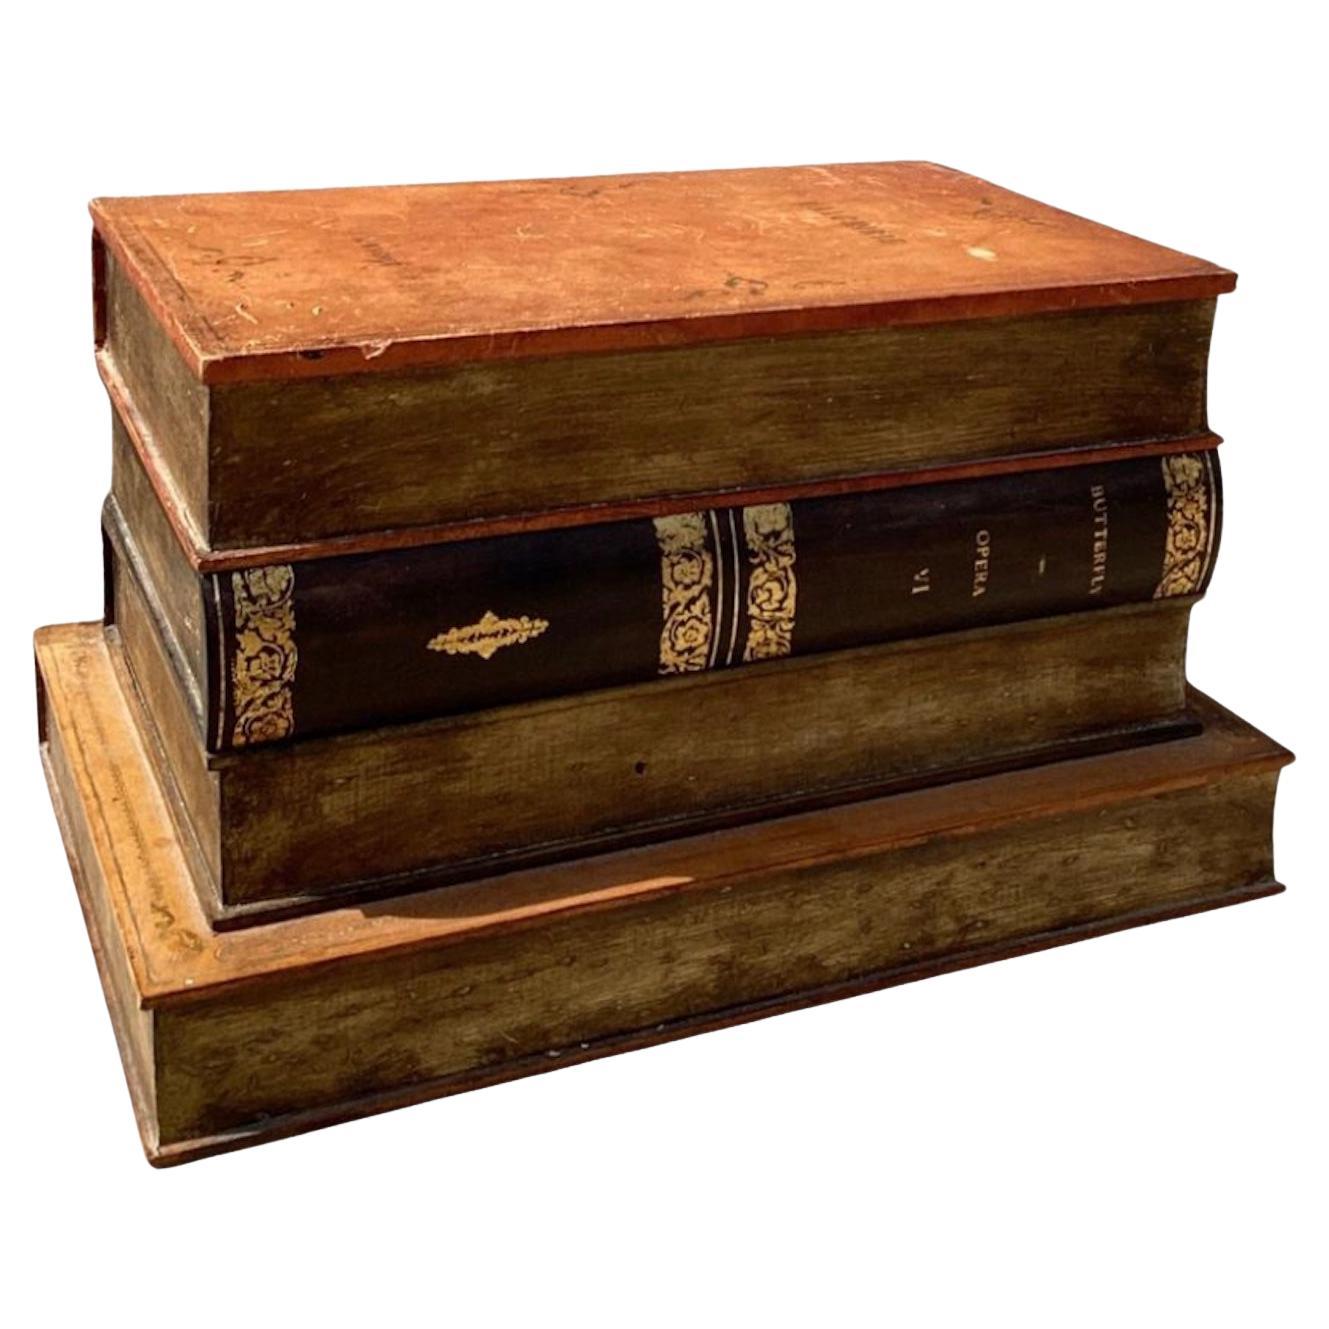 Beau livre relié en cuir anglais comme table d'appoint avec rangement intérieur.